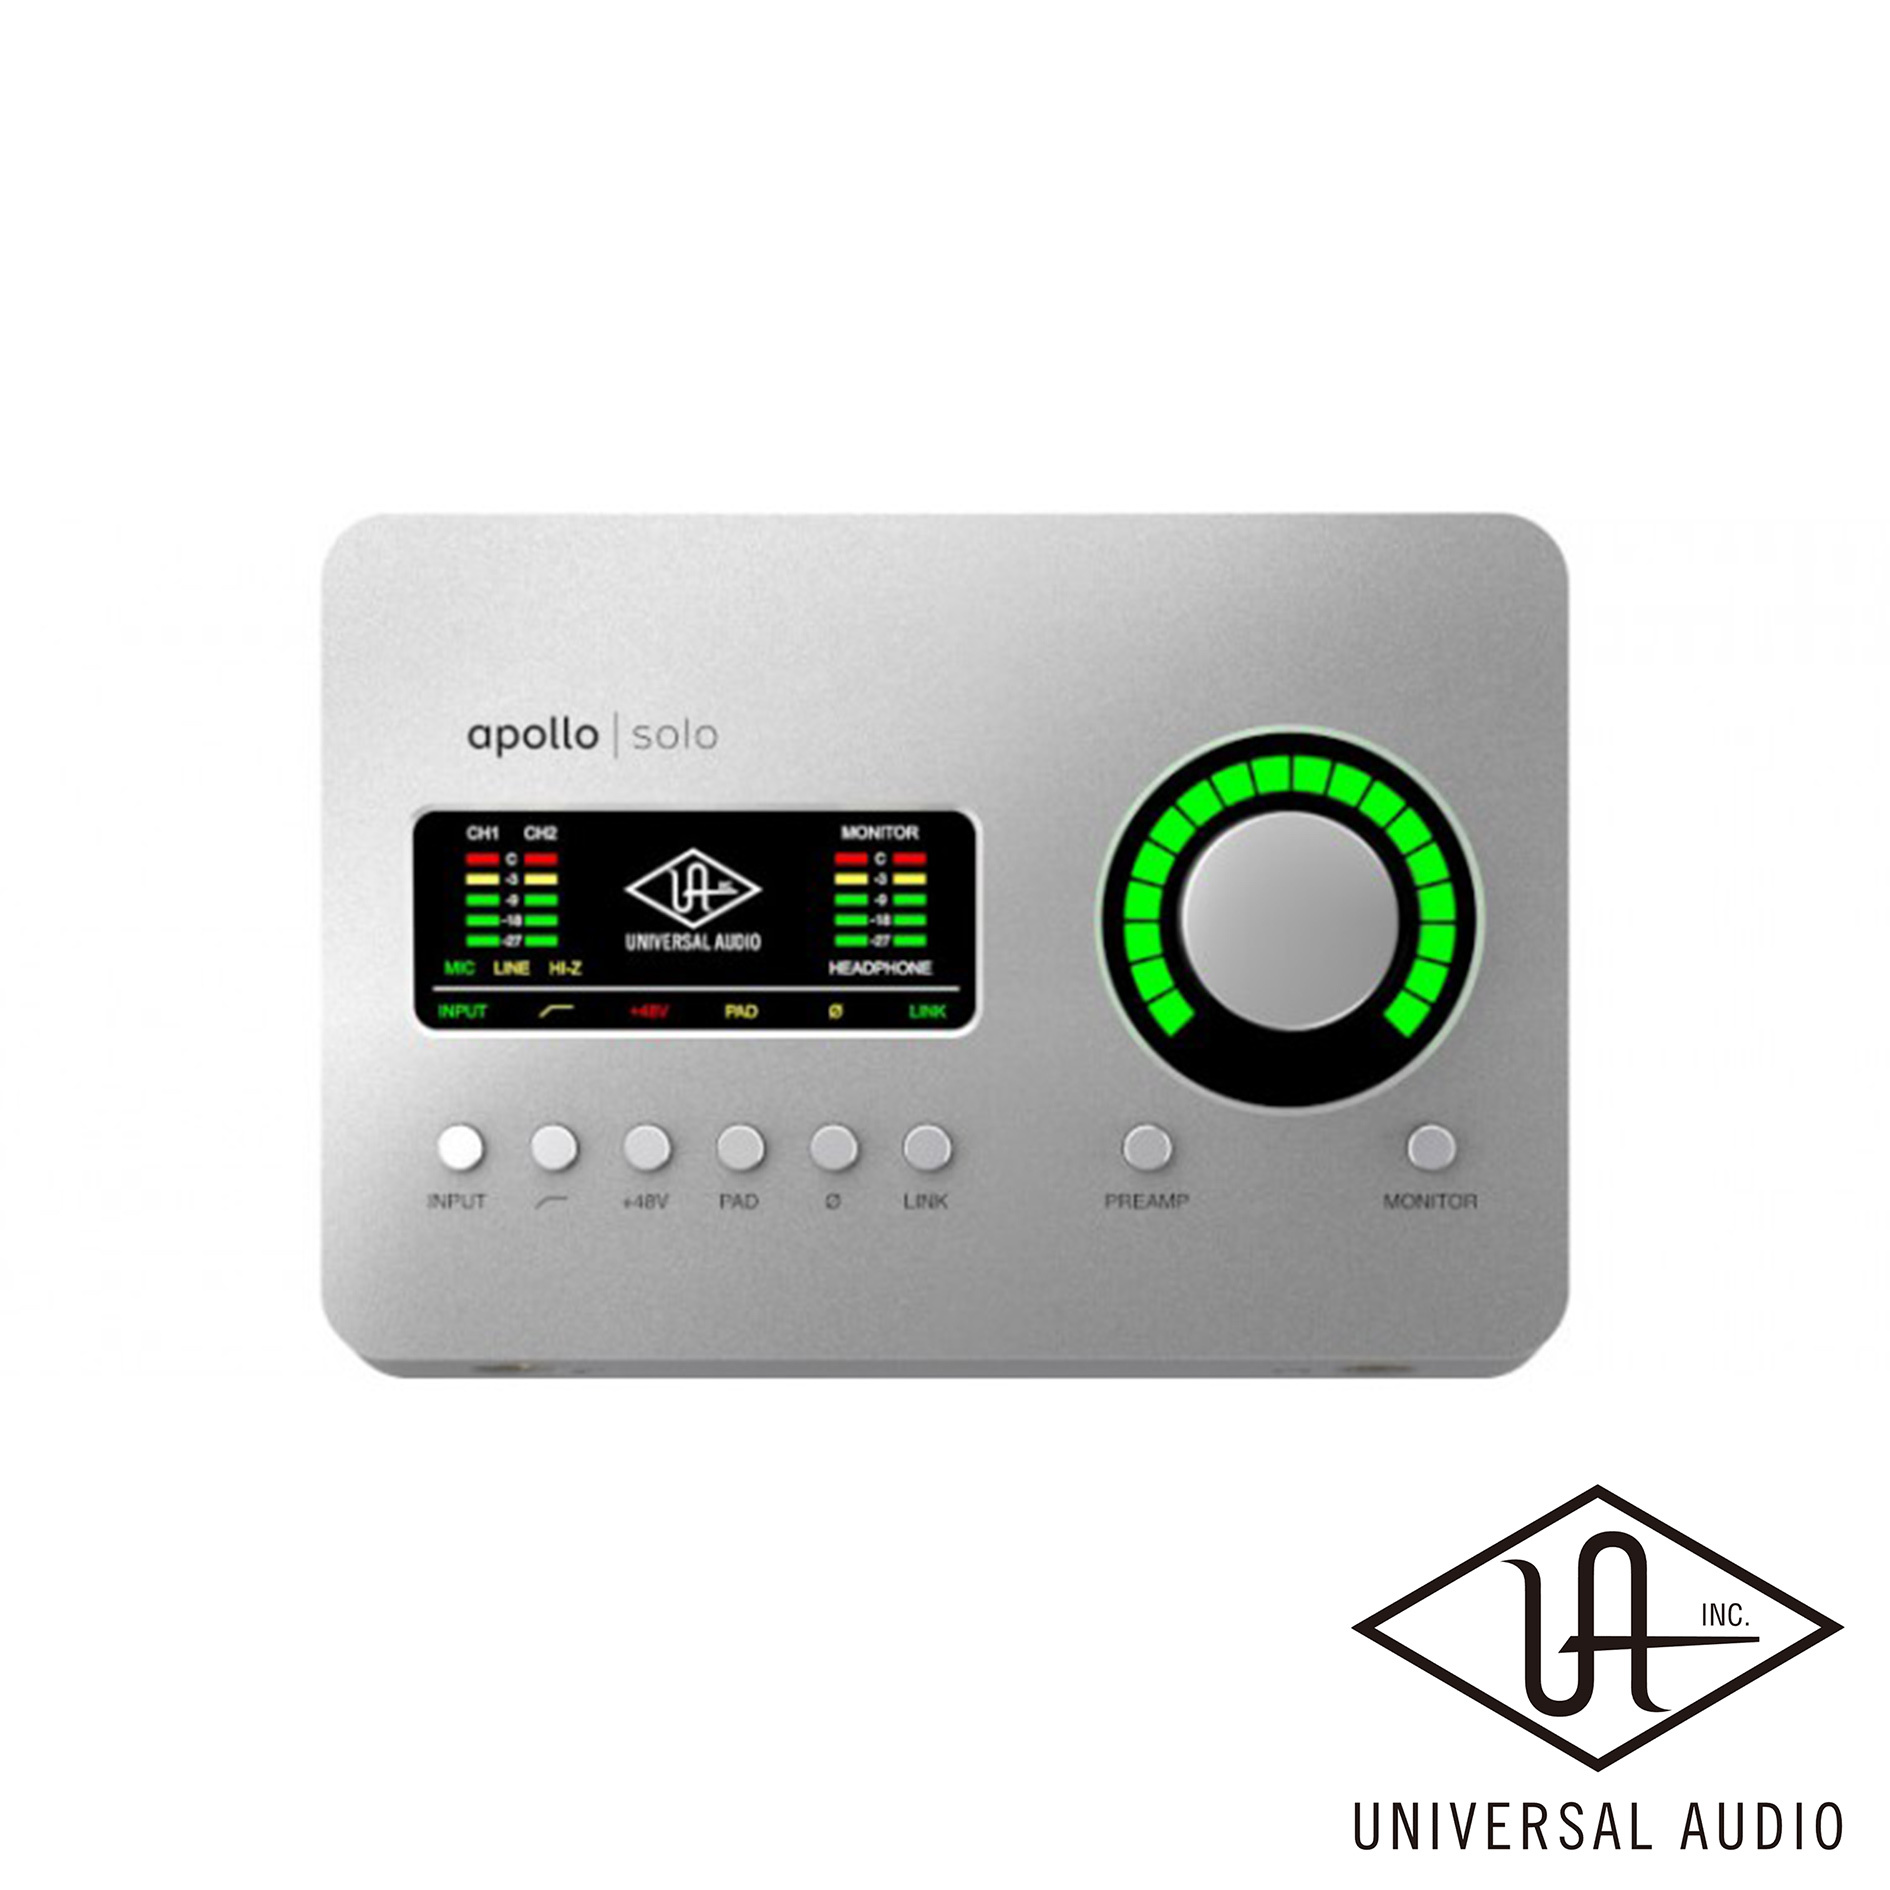 又昇樂器.音響】Universal Audio APOLLO SOLO Thunderbolt 3 錄音介面